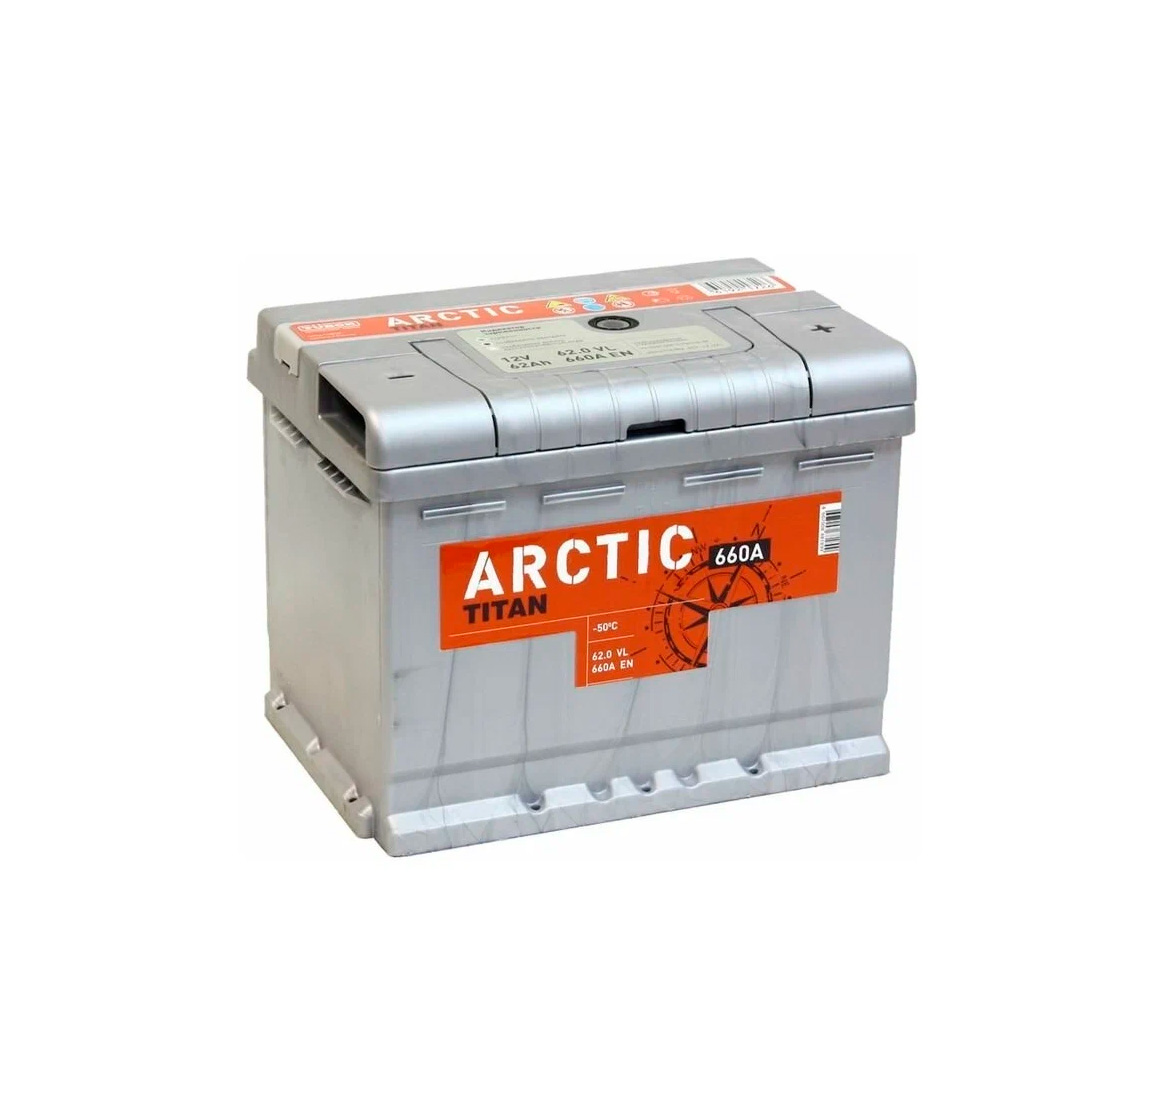 Как расшифровать год выпуска аккумулятора Titan Arctic. Как узнать когда выпущен аккумулятор Titan Arctic.